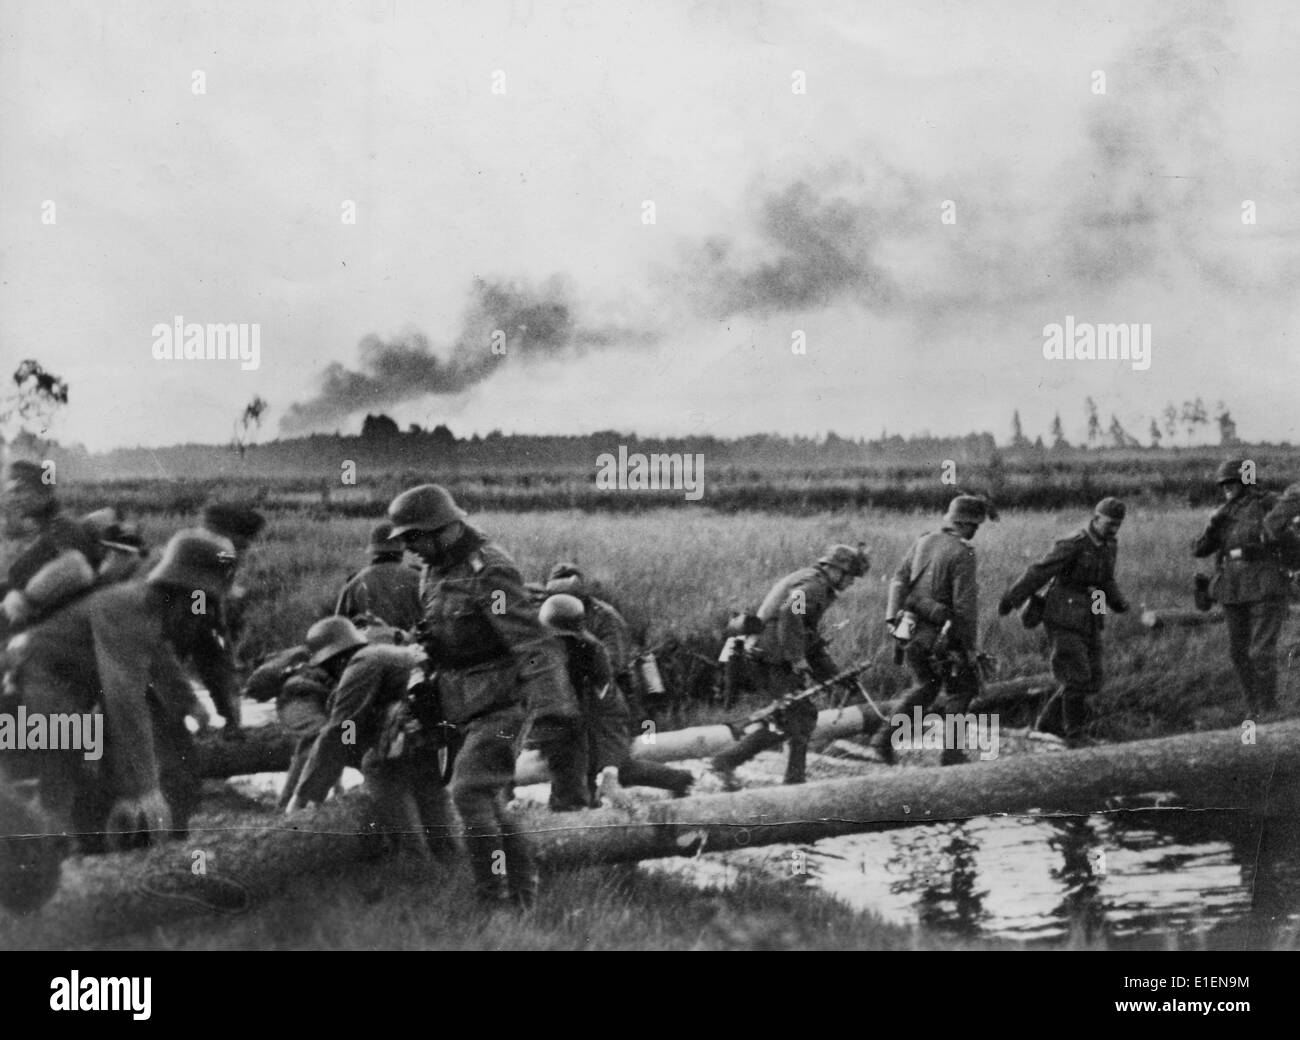 Нападение на советский союз 1941. Войска вермахта пересекают границу СССР. 22 Июня 1941 река Буг. Немецкие солдаты 22 июня 1941.